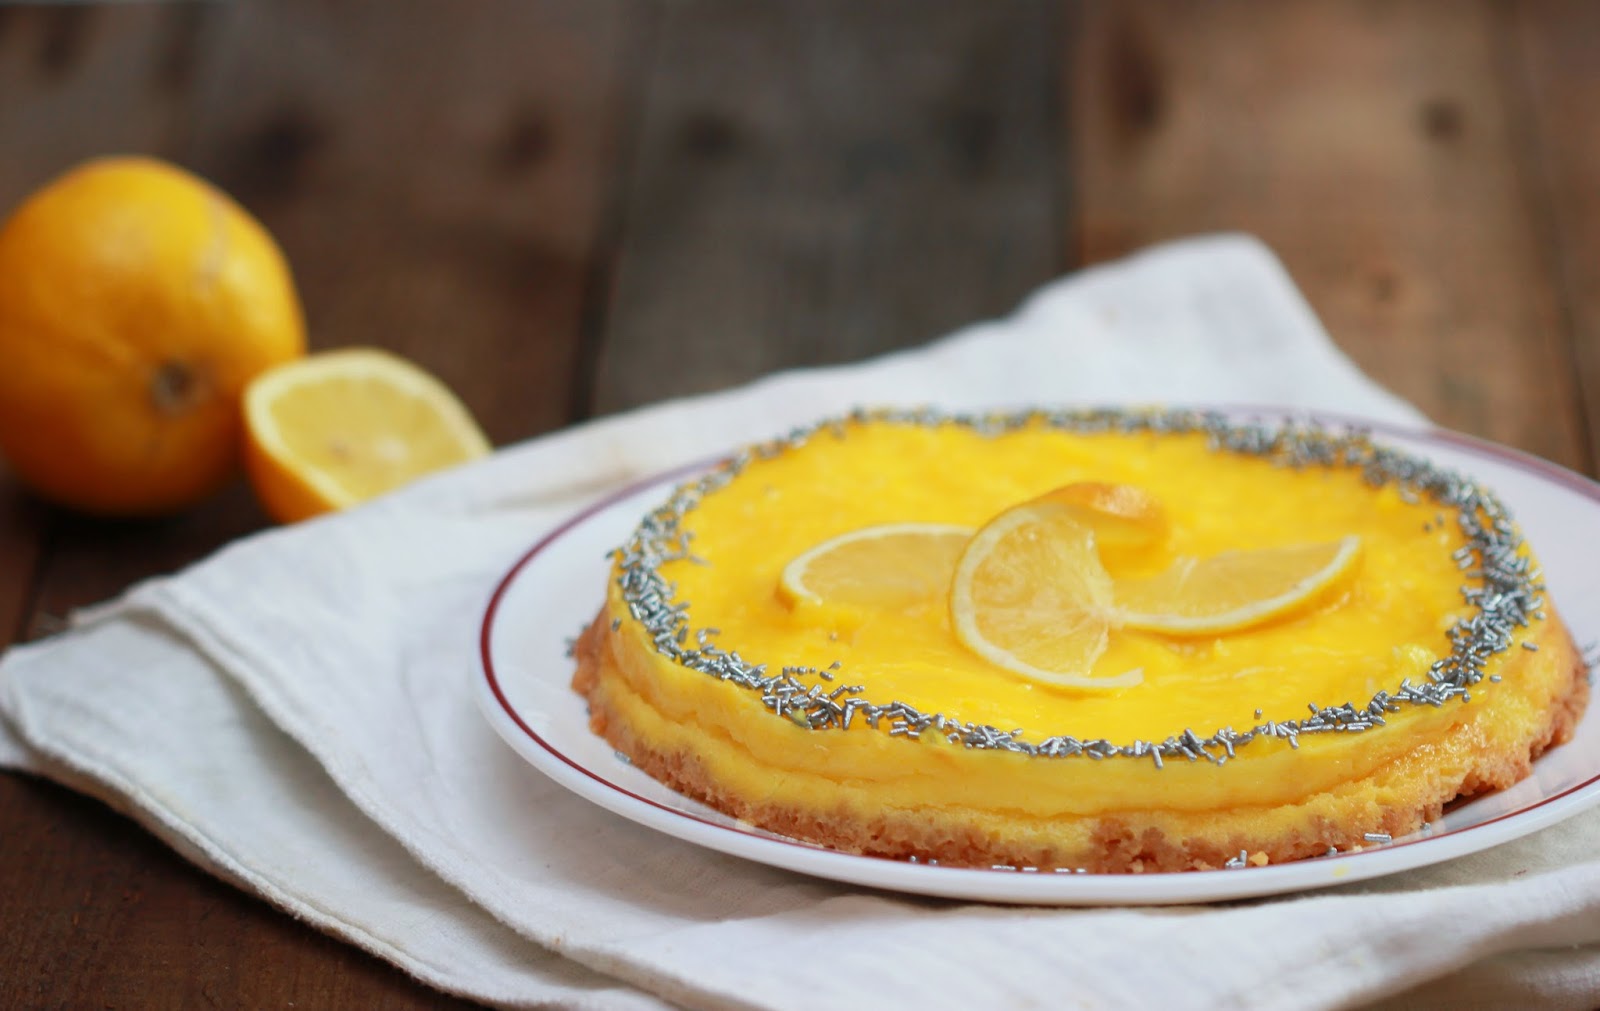 Recette du cheesecake au citron. Un mélange sucré et acidulé qui donne envie d'en reprendre vite une bouchée !